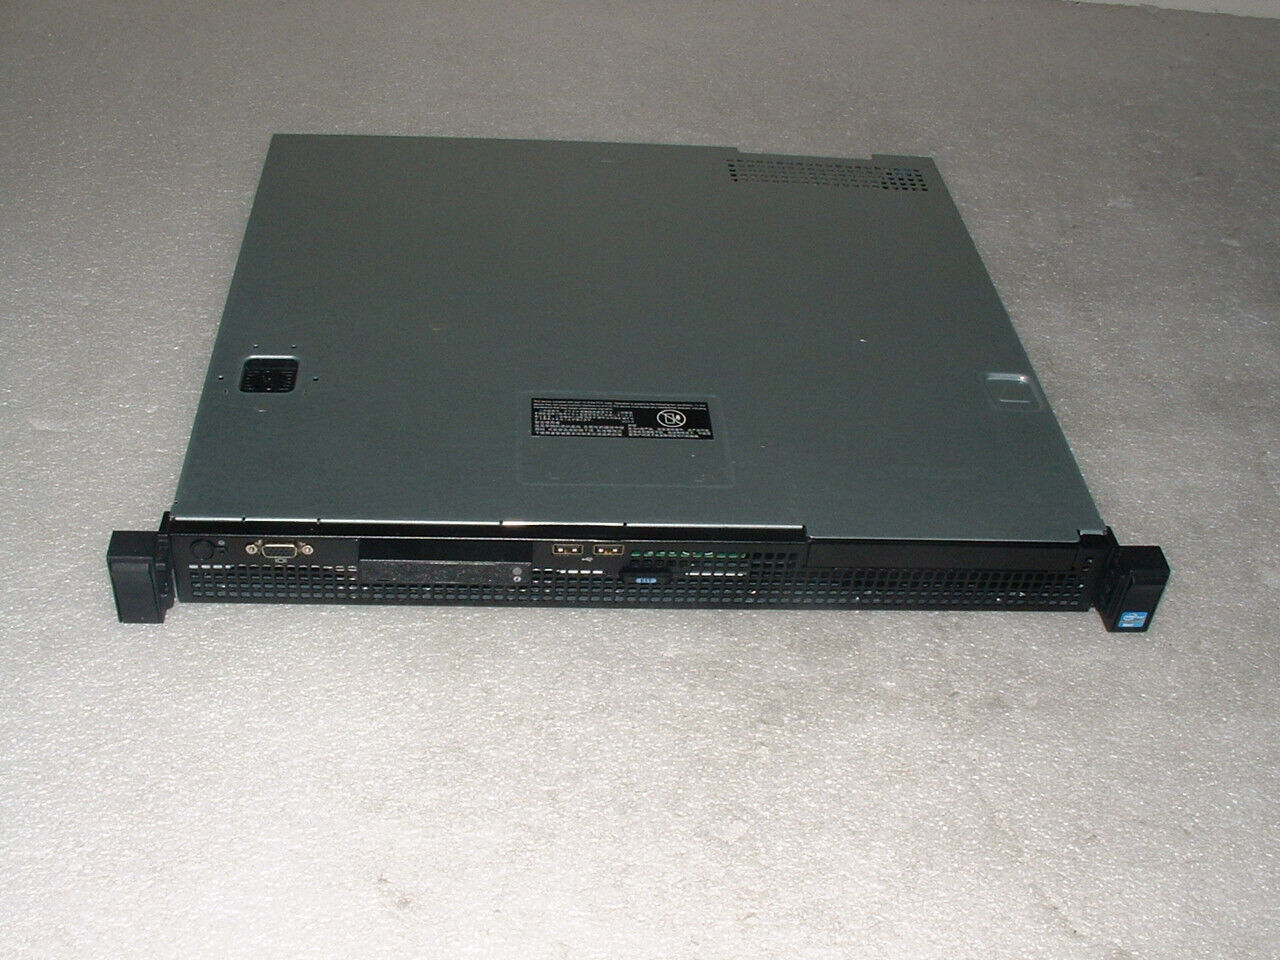 Dell Poweredge R210 II Server Xeon E3-1240 v2 3.4ghz Quad Core / 16gb / 1x Tray